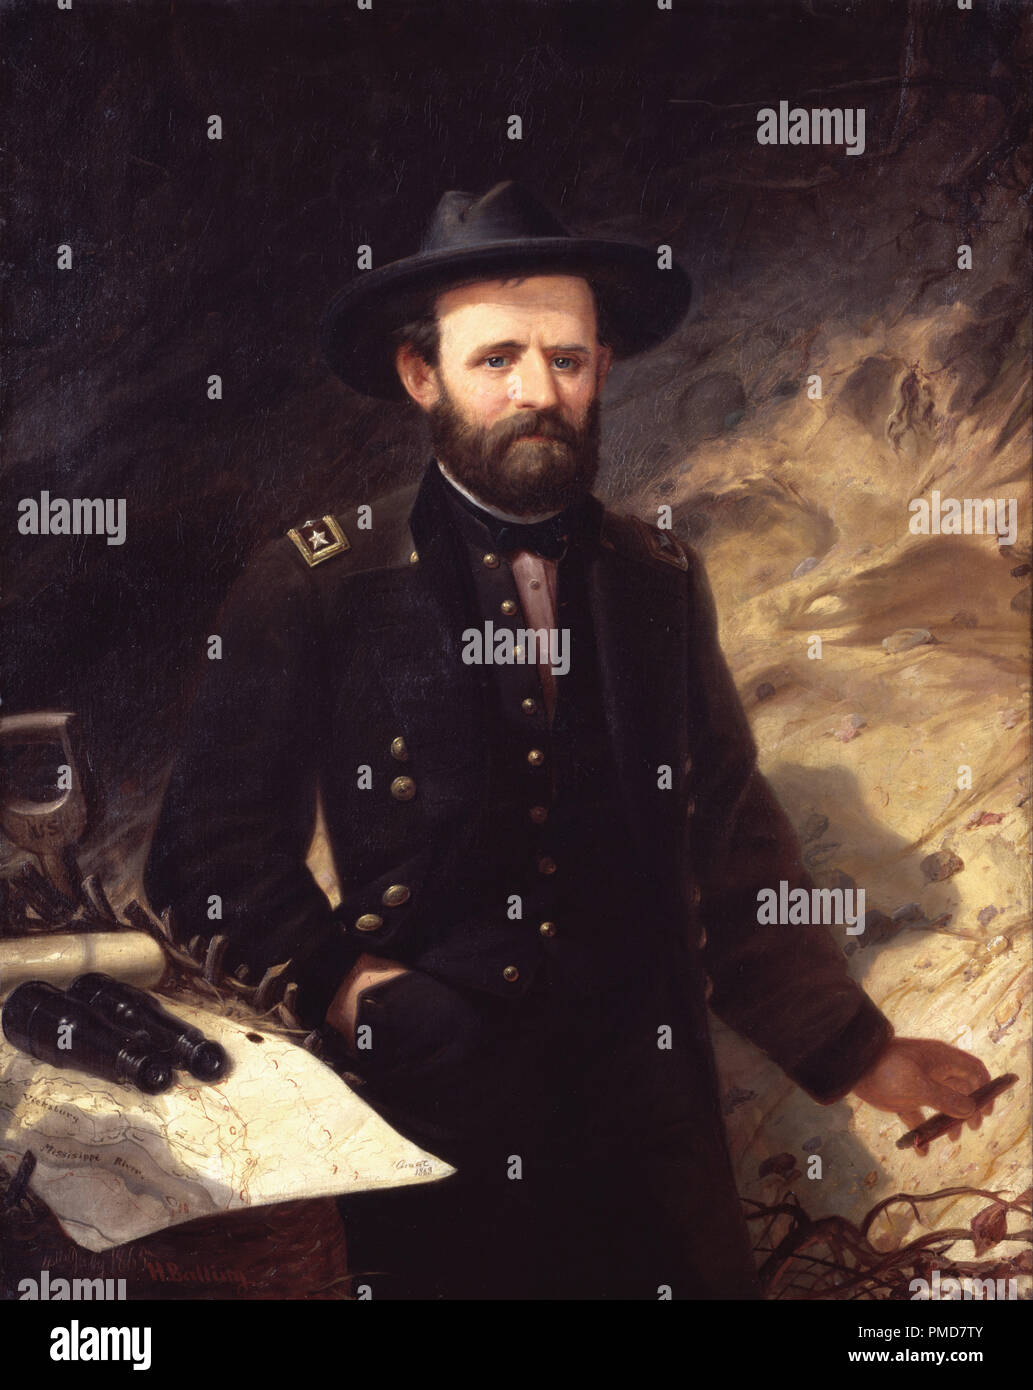 Ulysses S. Grant. Date/période : 1865. La peinture. Huile sur toile. Hauteur : 1 203 mm (47,36 po) ; Largeur : 946 mm (37,24 po). Auteur : Ole Peter HANSEN BALLING. Banque D'Images